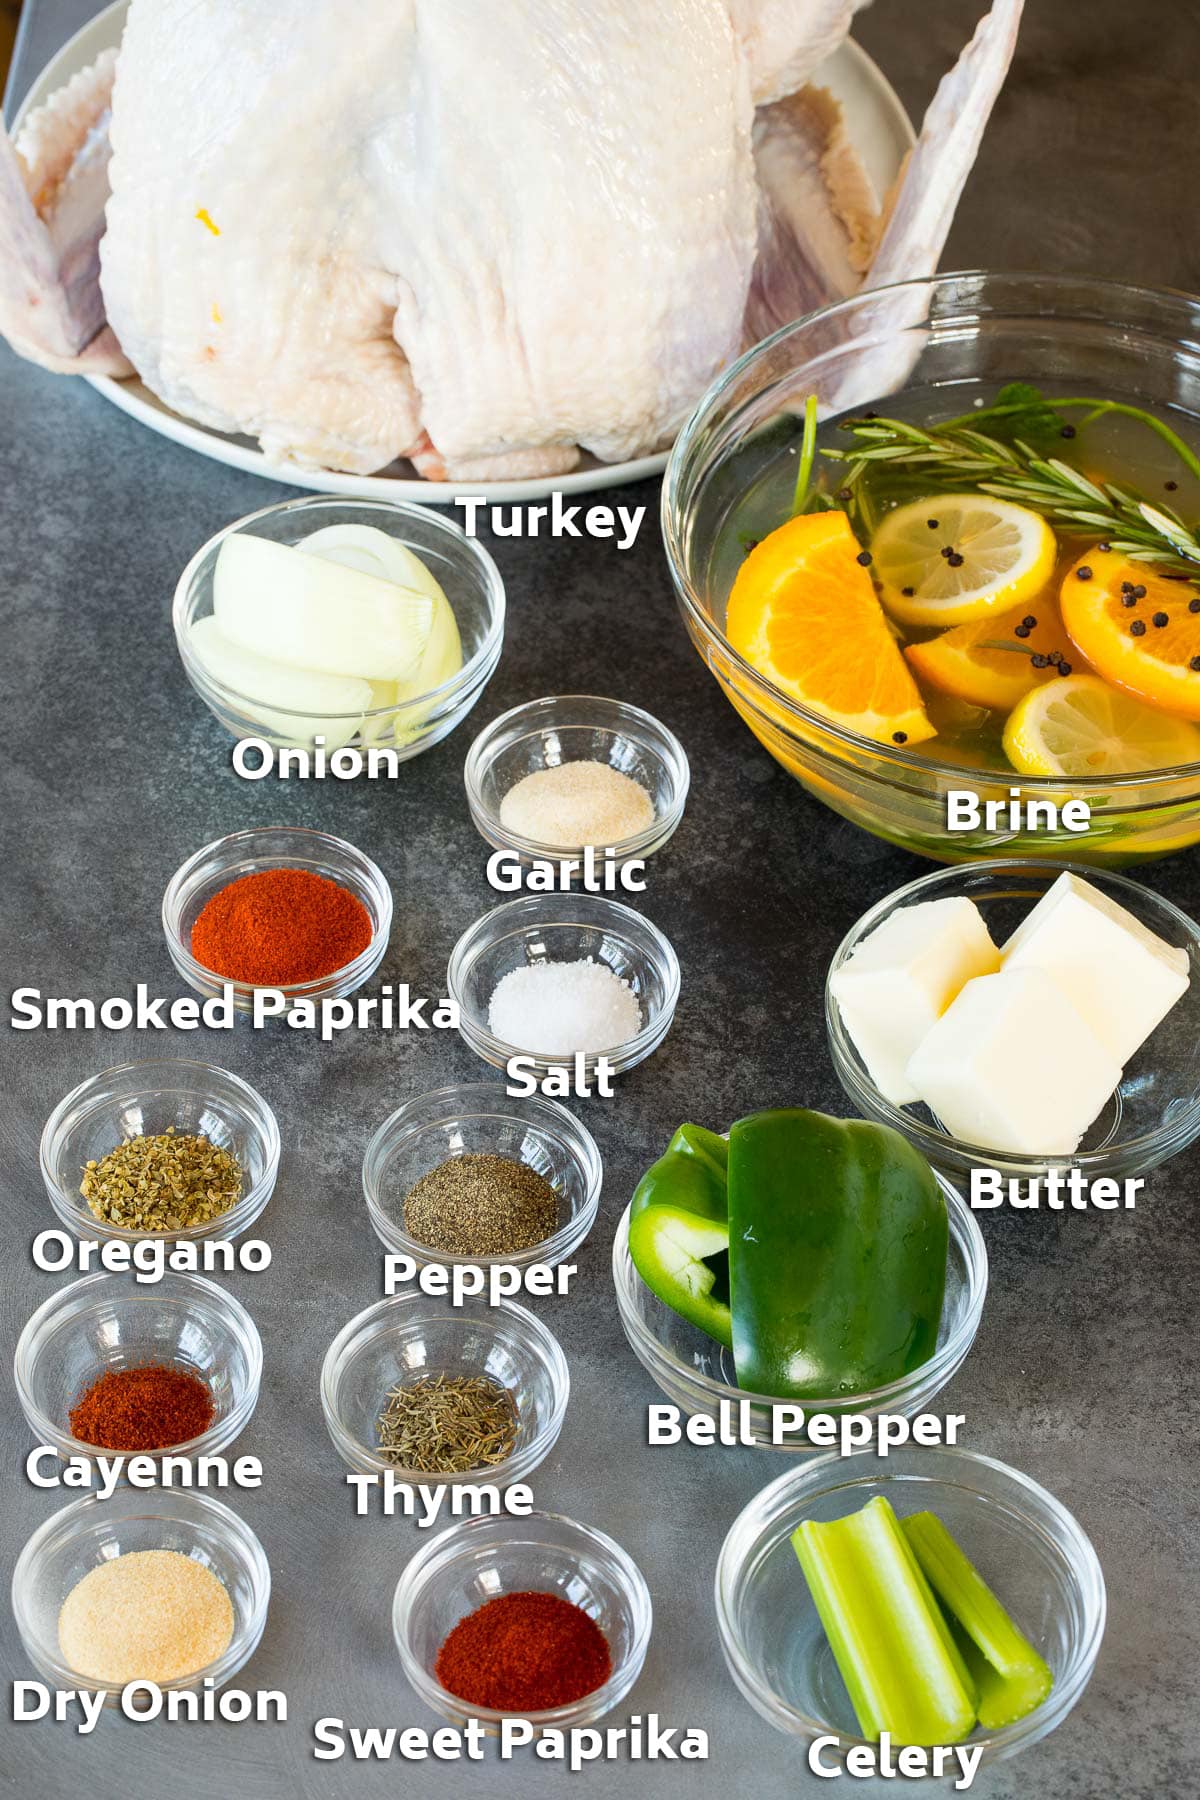 Ingredients including a turkey, brine, bowls of seasonings and vegetables.